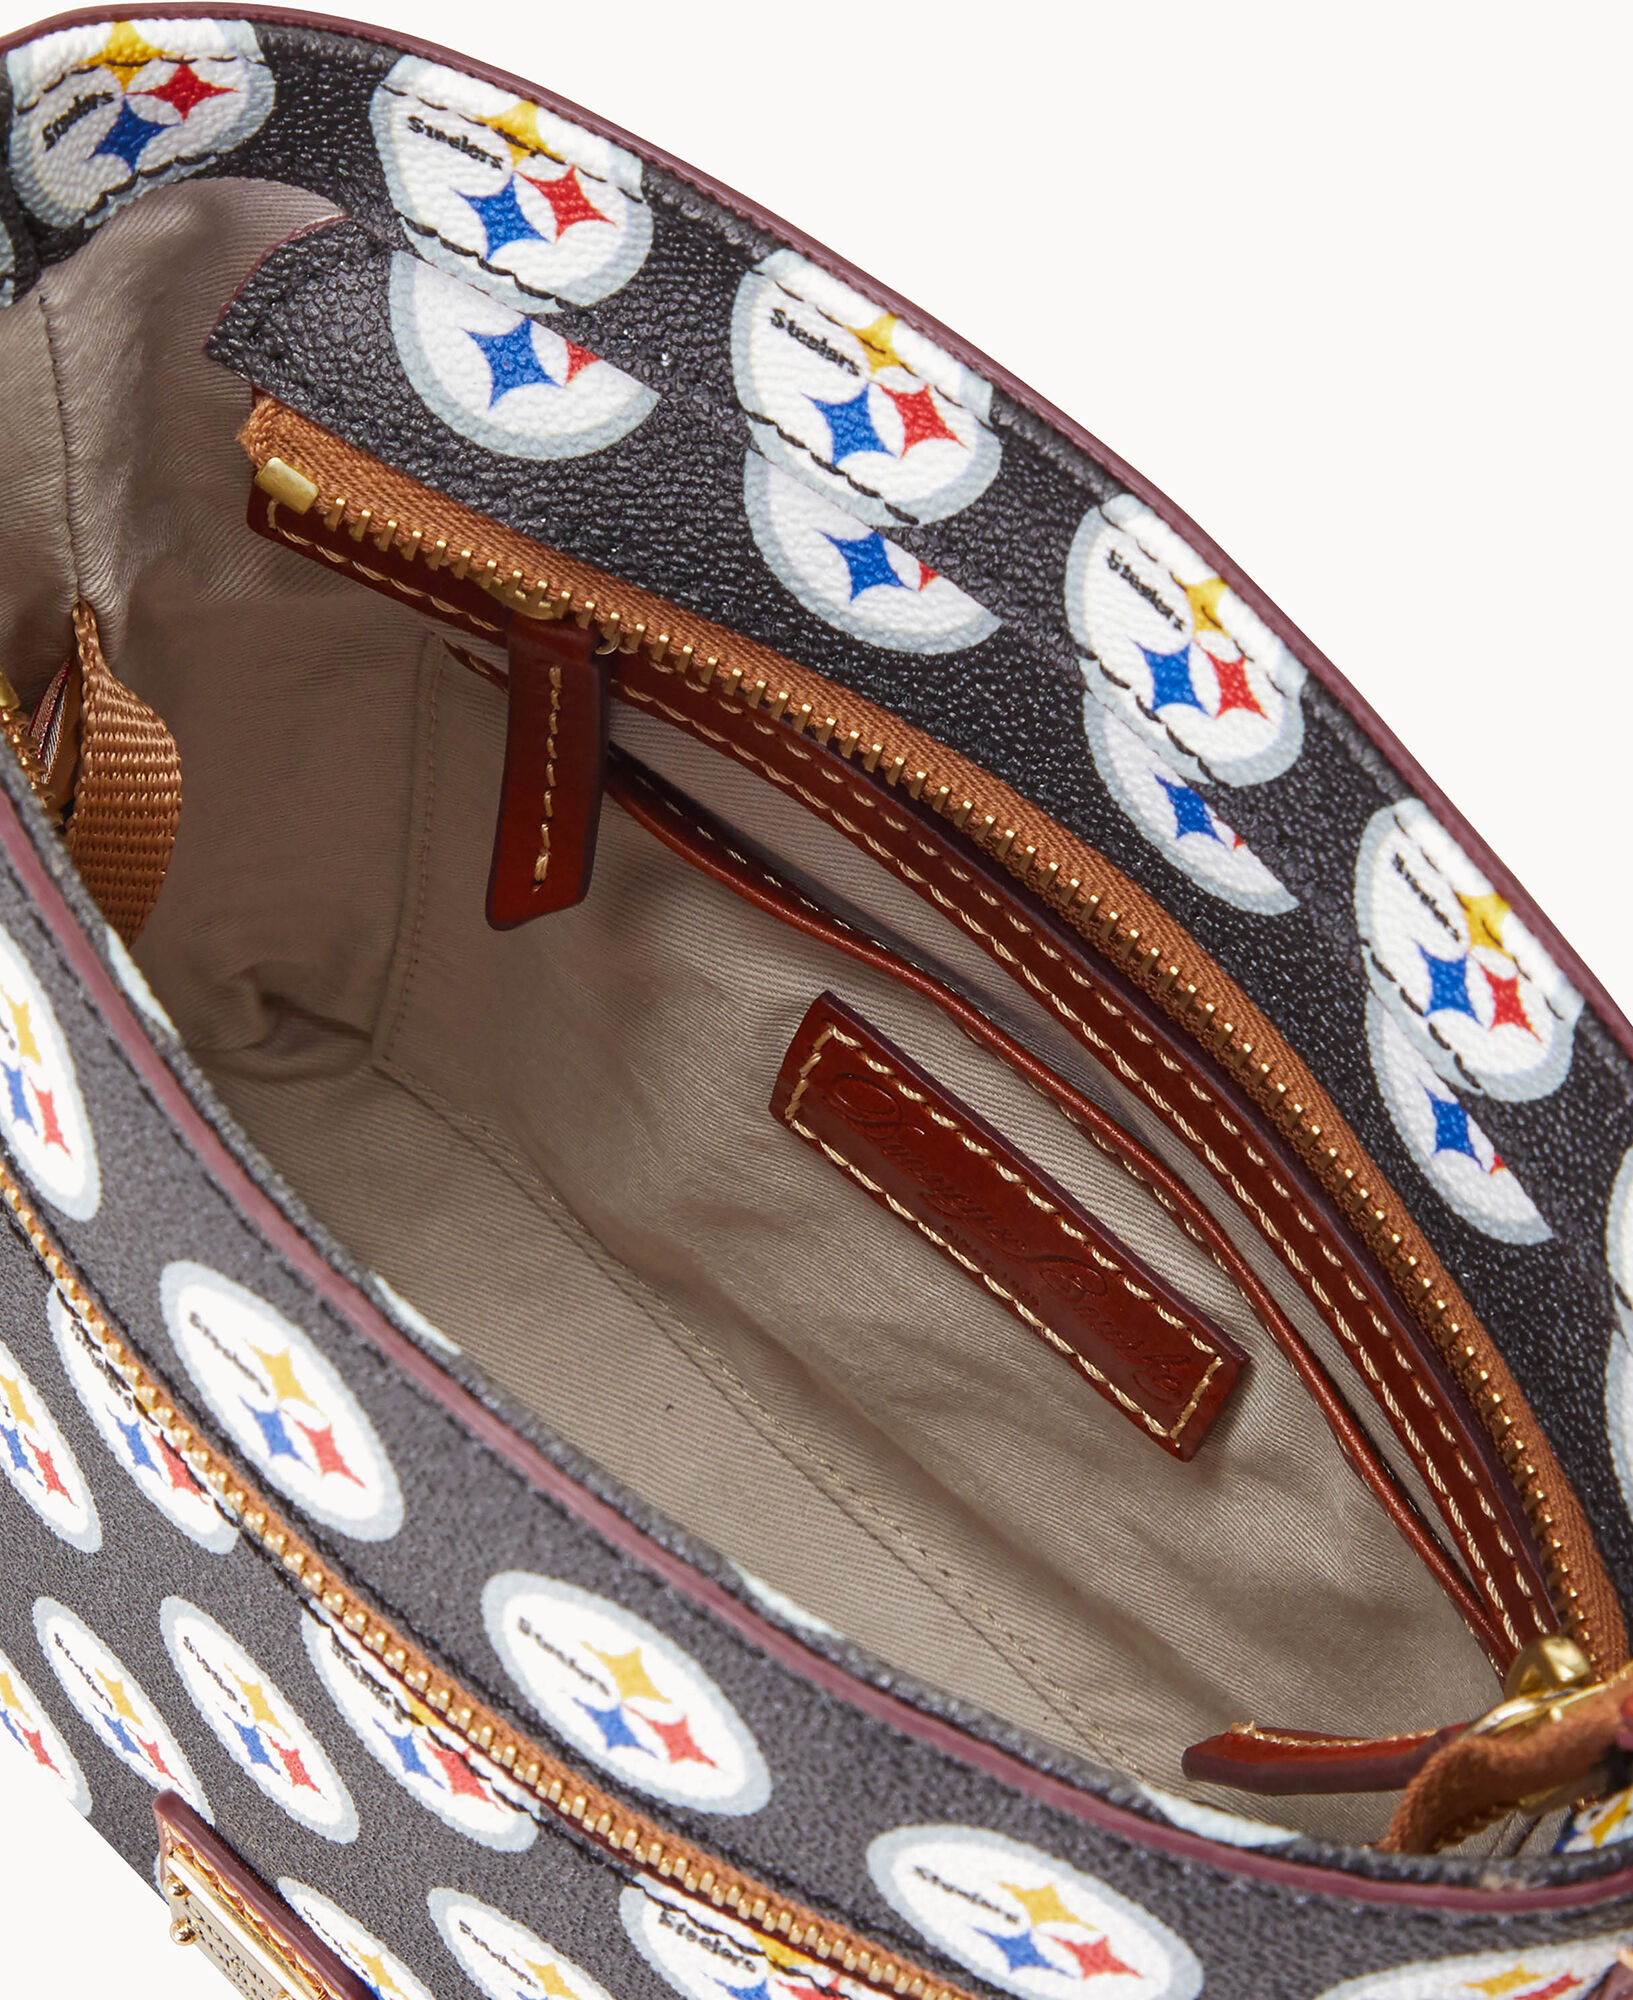 Dooney & Bourke NFL Baltimore Ravens Small Zip Crossbody Shoulder Bag